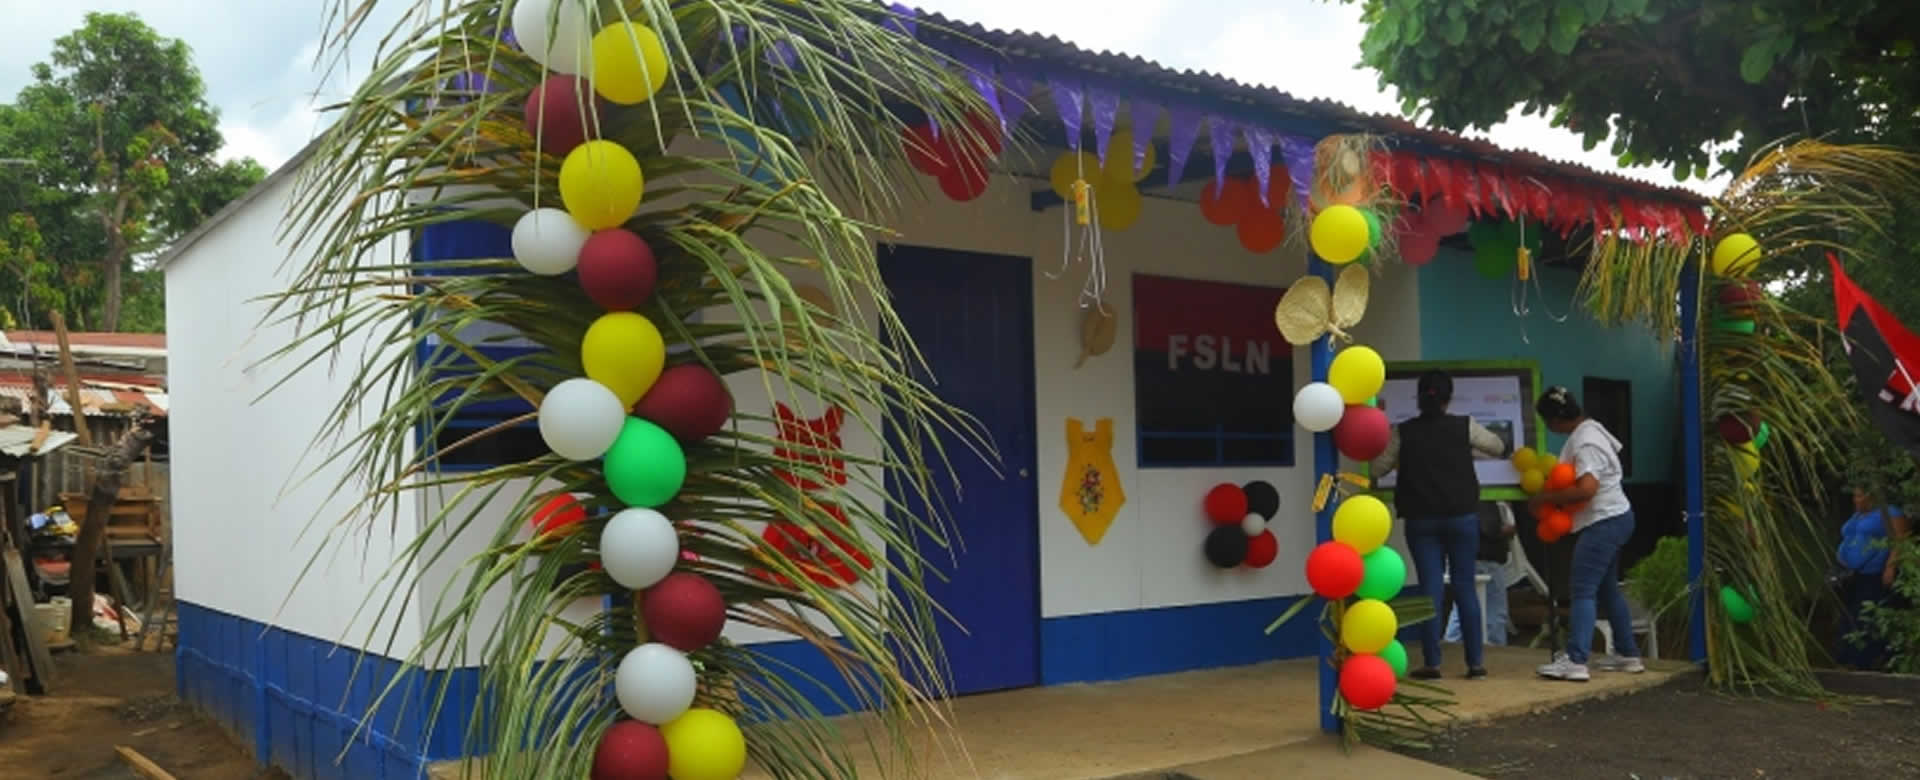 Familia del Barrio Grenada mejora su calidad de vida con la entrega de Vivienda Digna